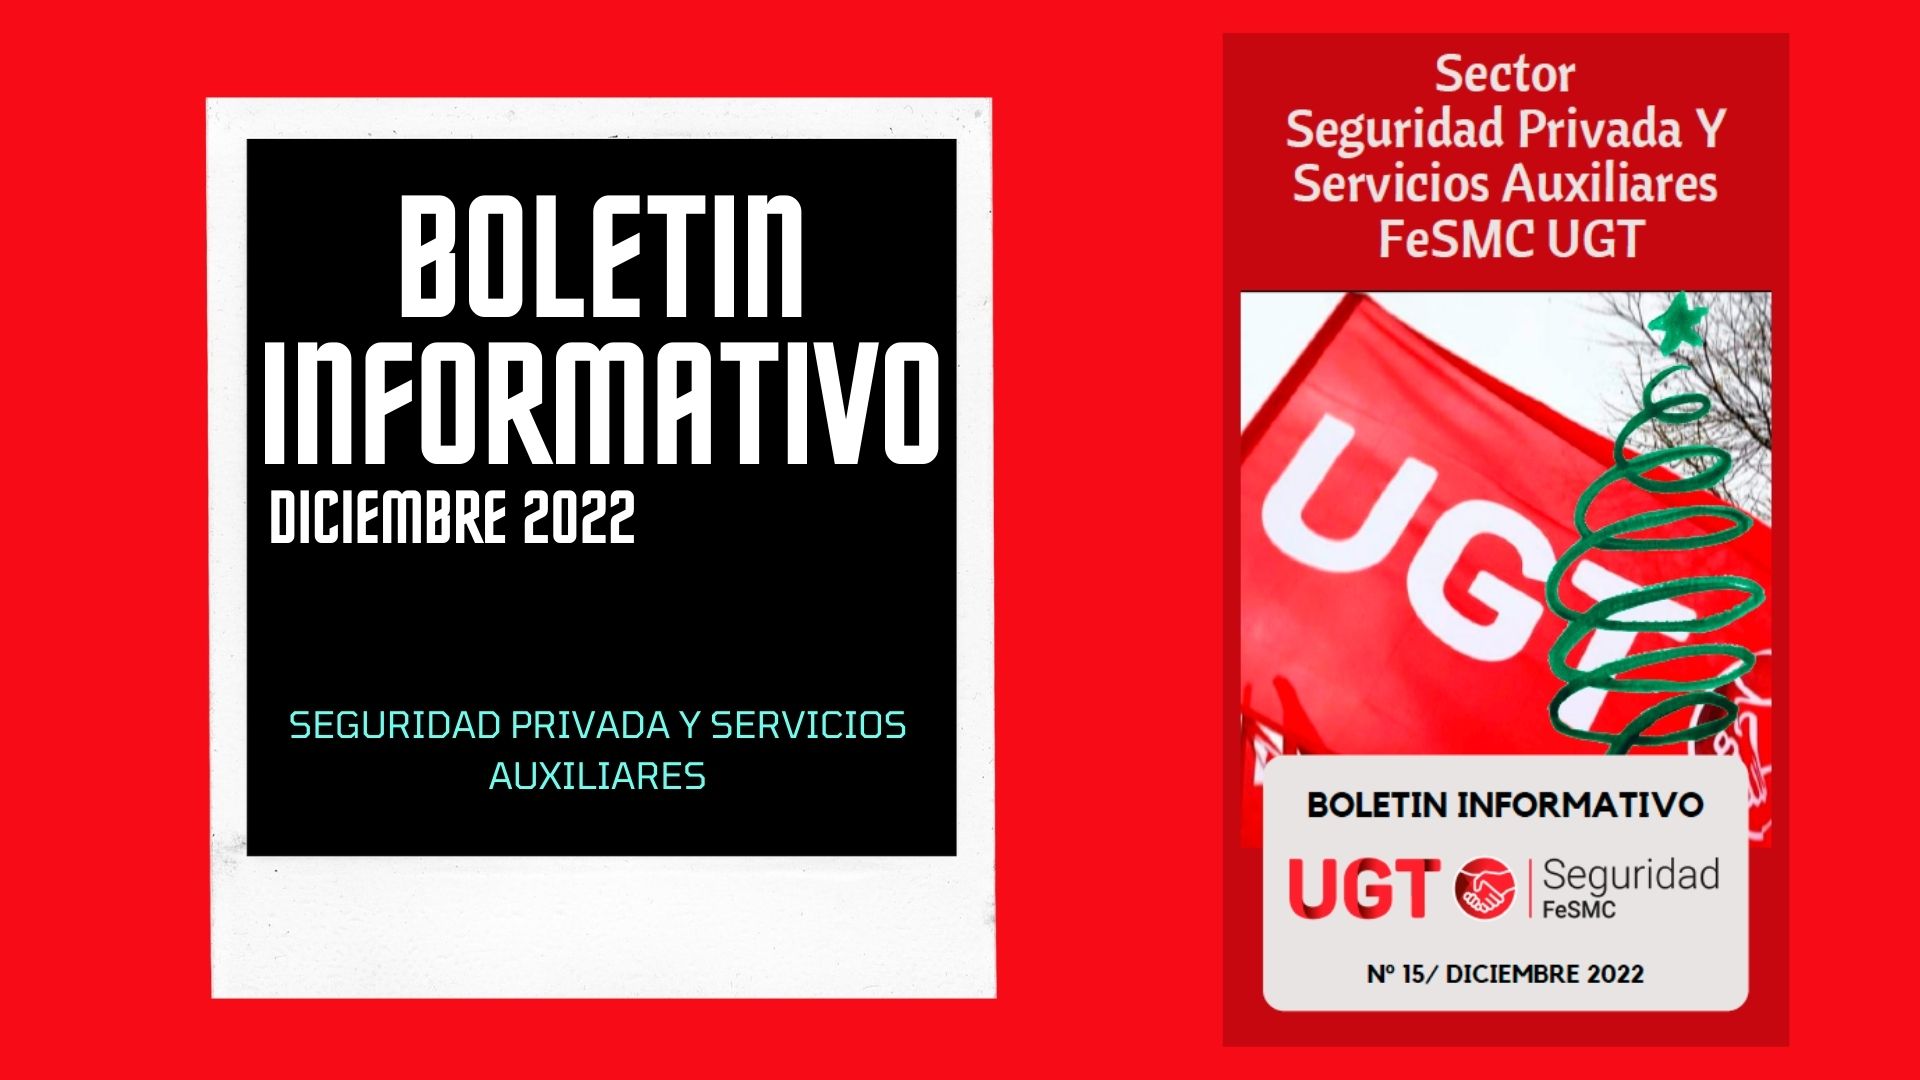 Revista | Sector de Seguridad Privada y Servicios Auxiliares FeSMC UGT | DICIEMBRE 2022